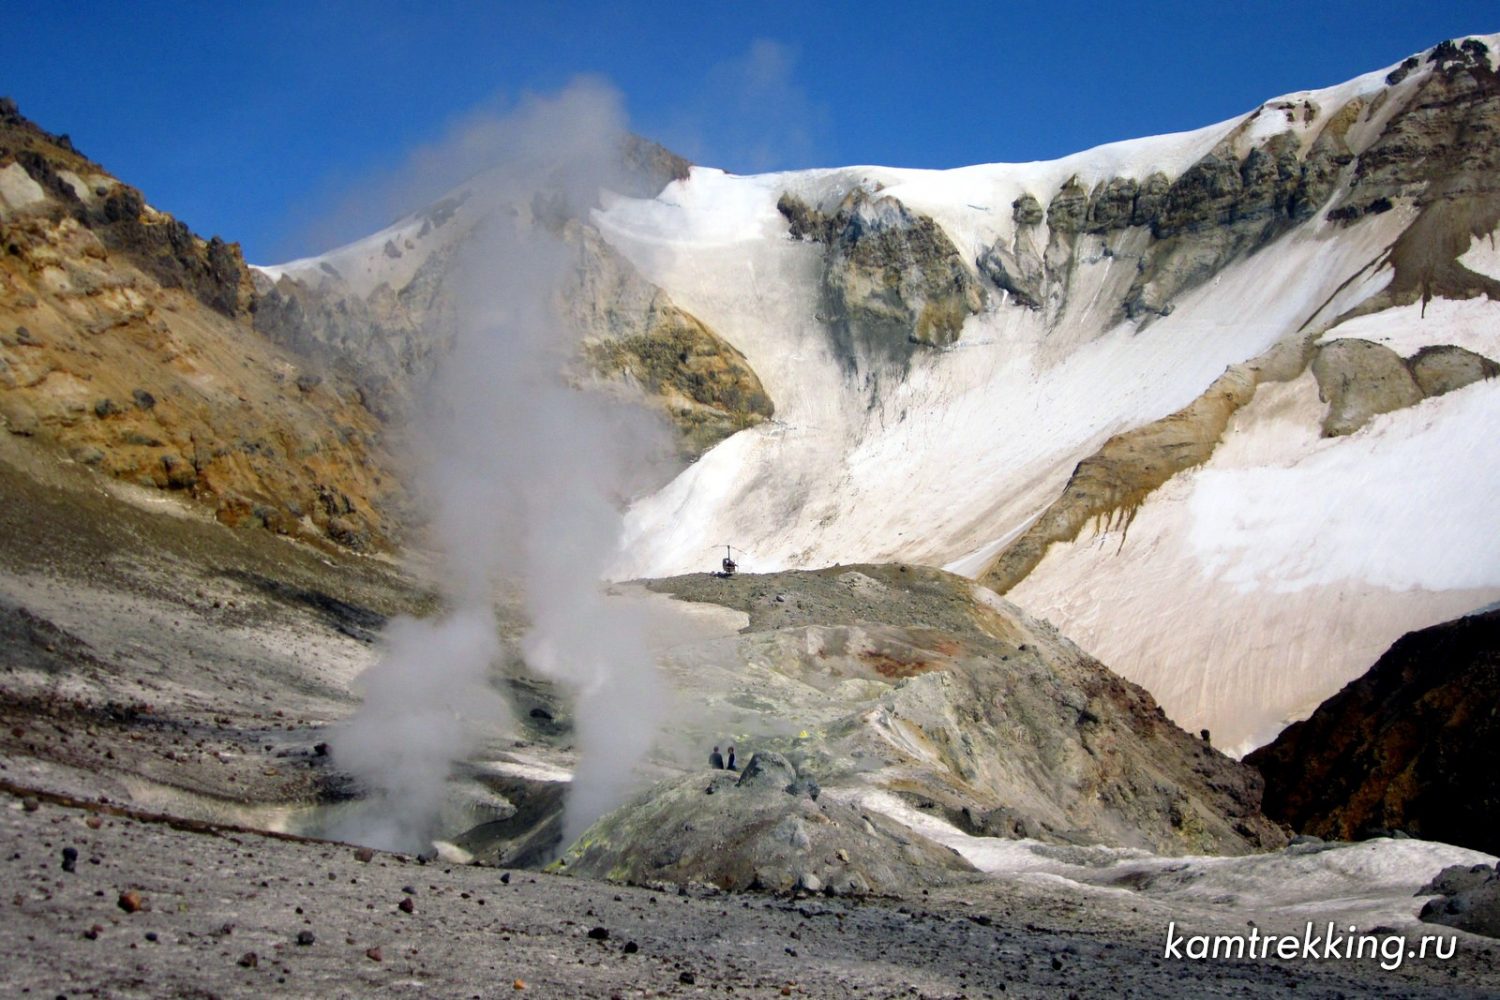 Камчатка вертолетные экскурсии к вулканам